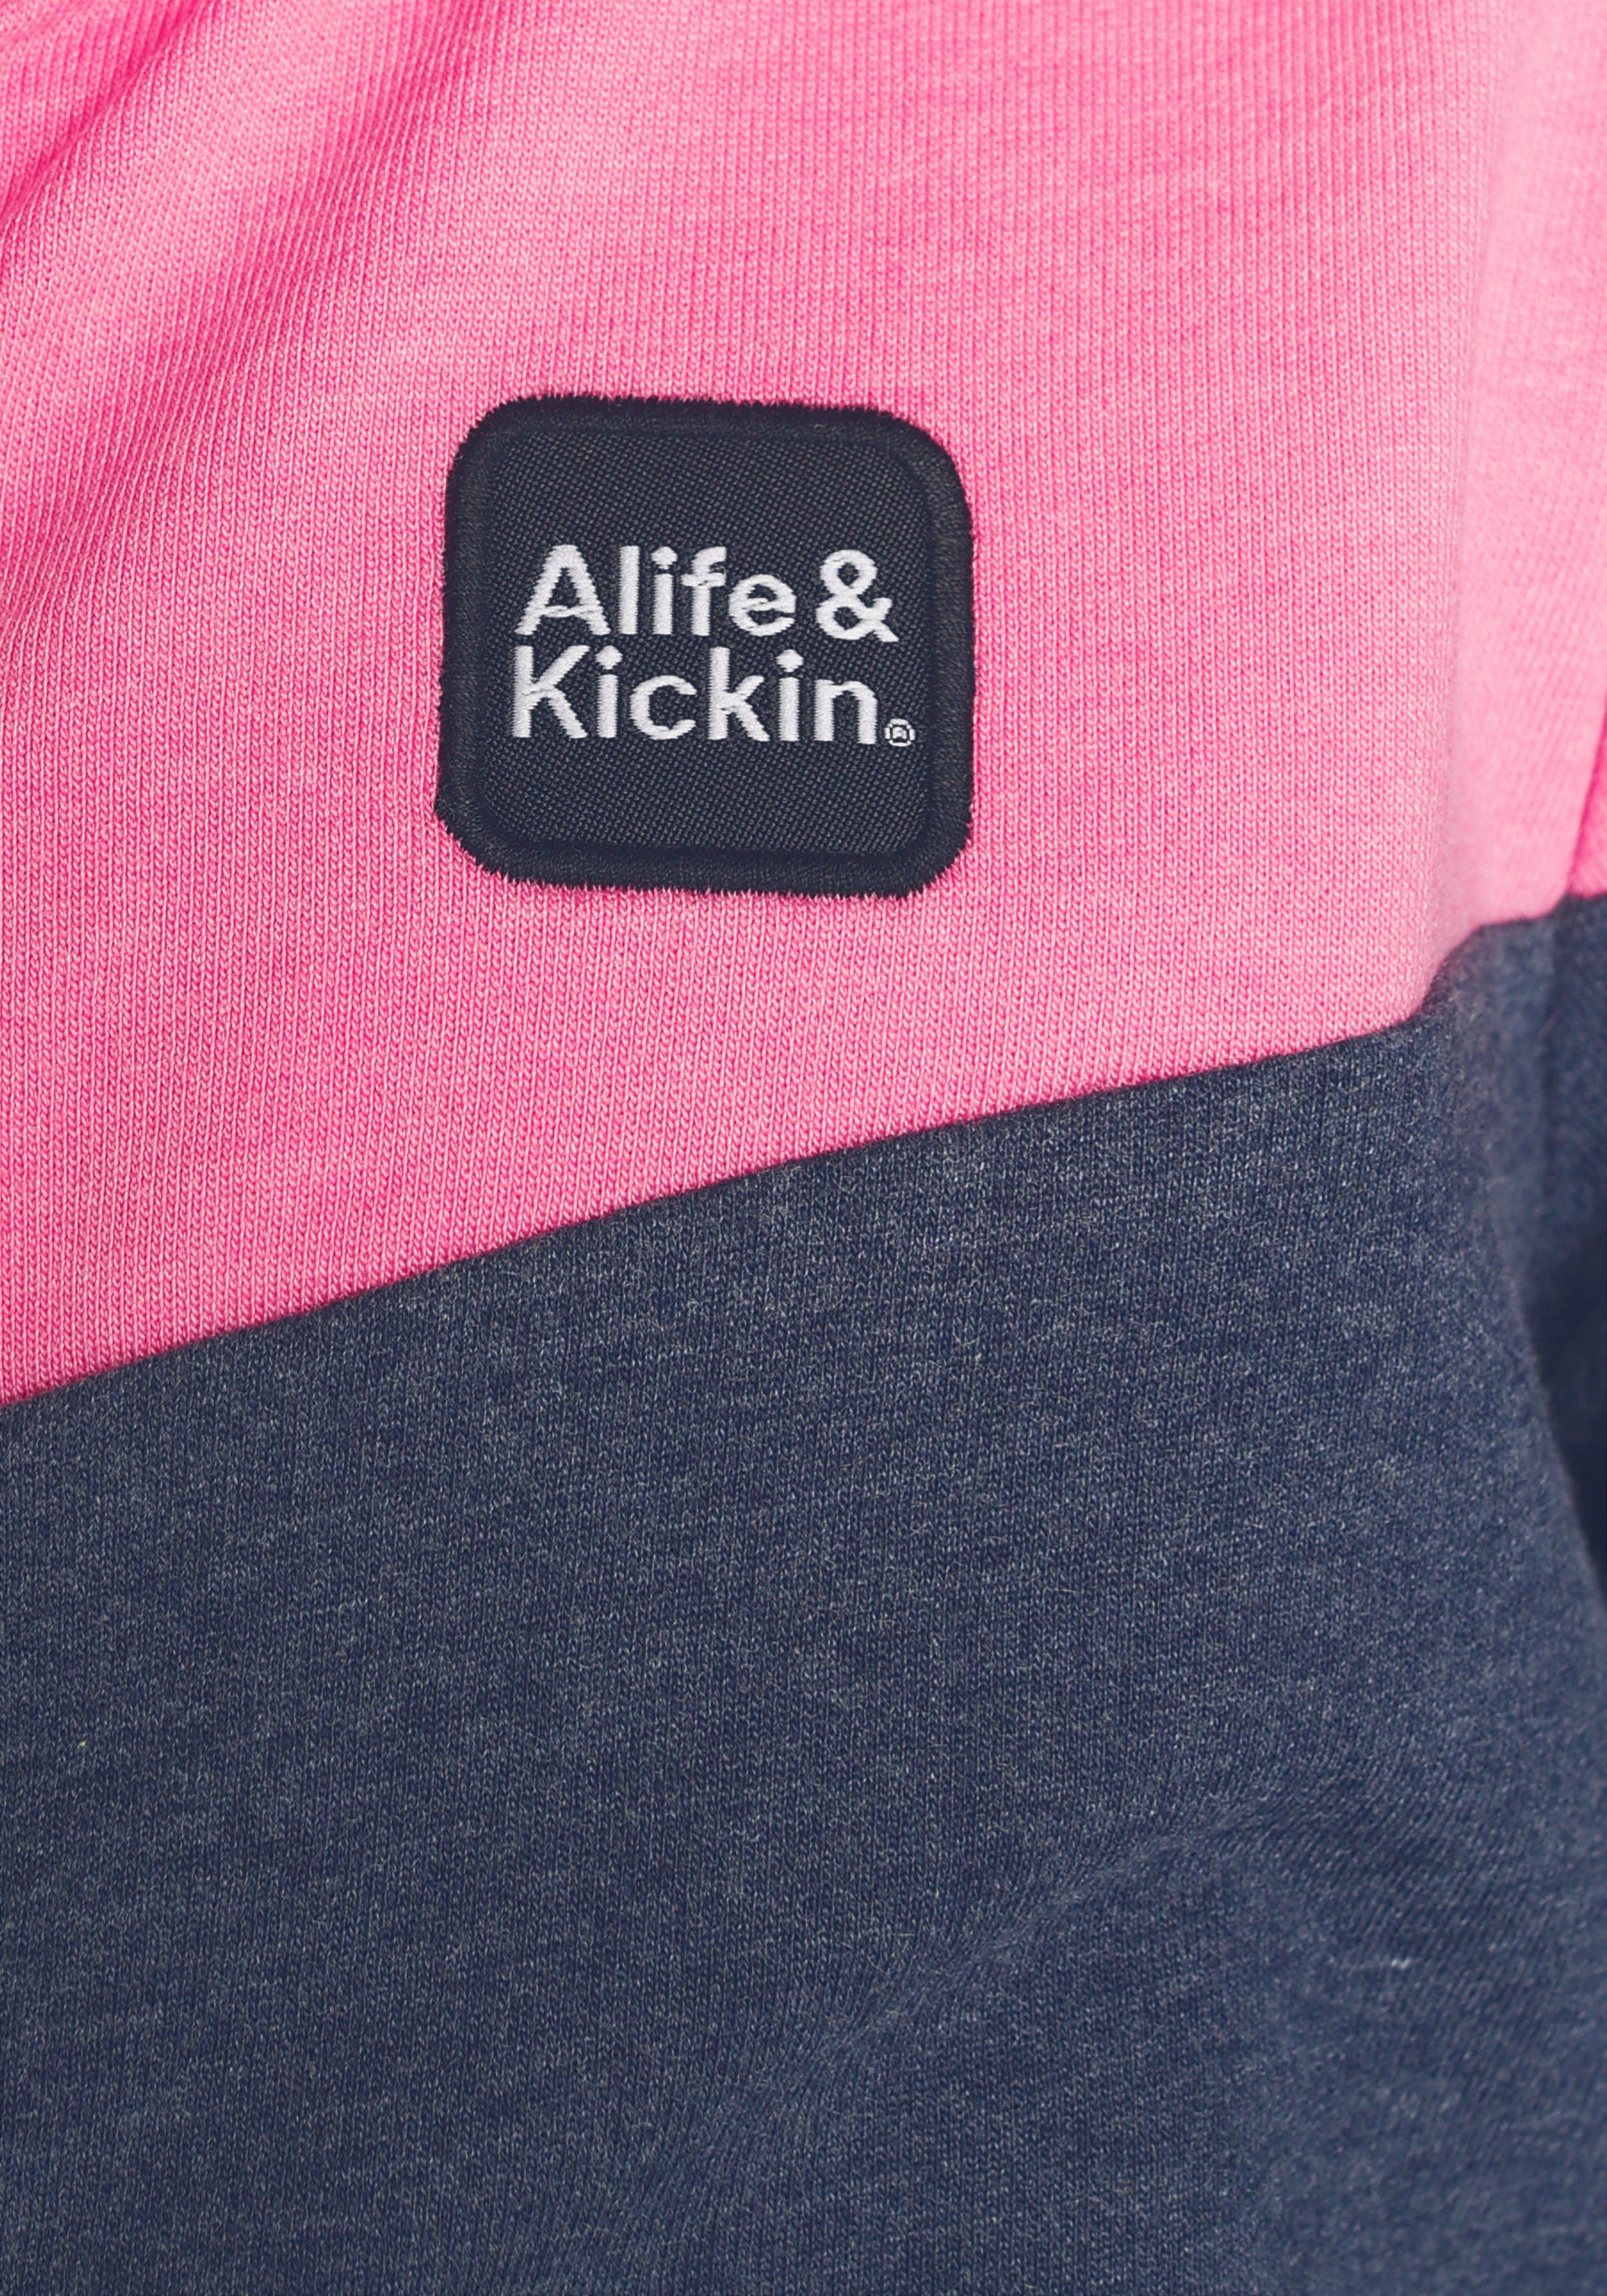 Alife & Kickin Sweatjacke MARKE! für Alife Kickin Colourblocking mit coolem & NEUE Kids